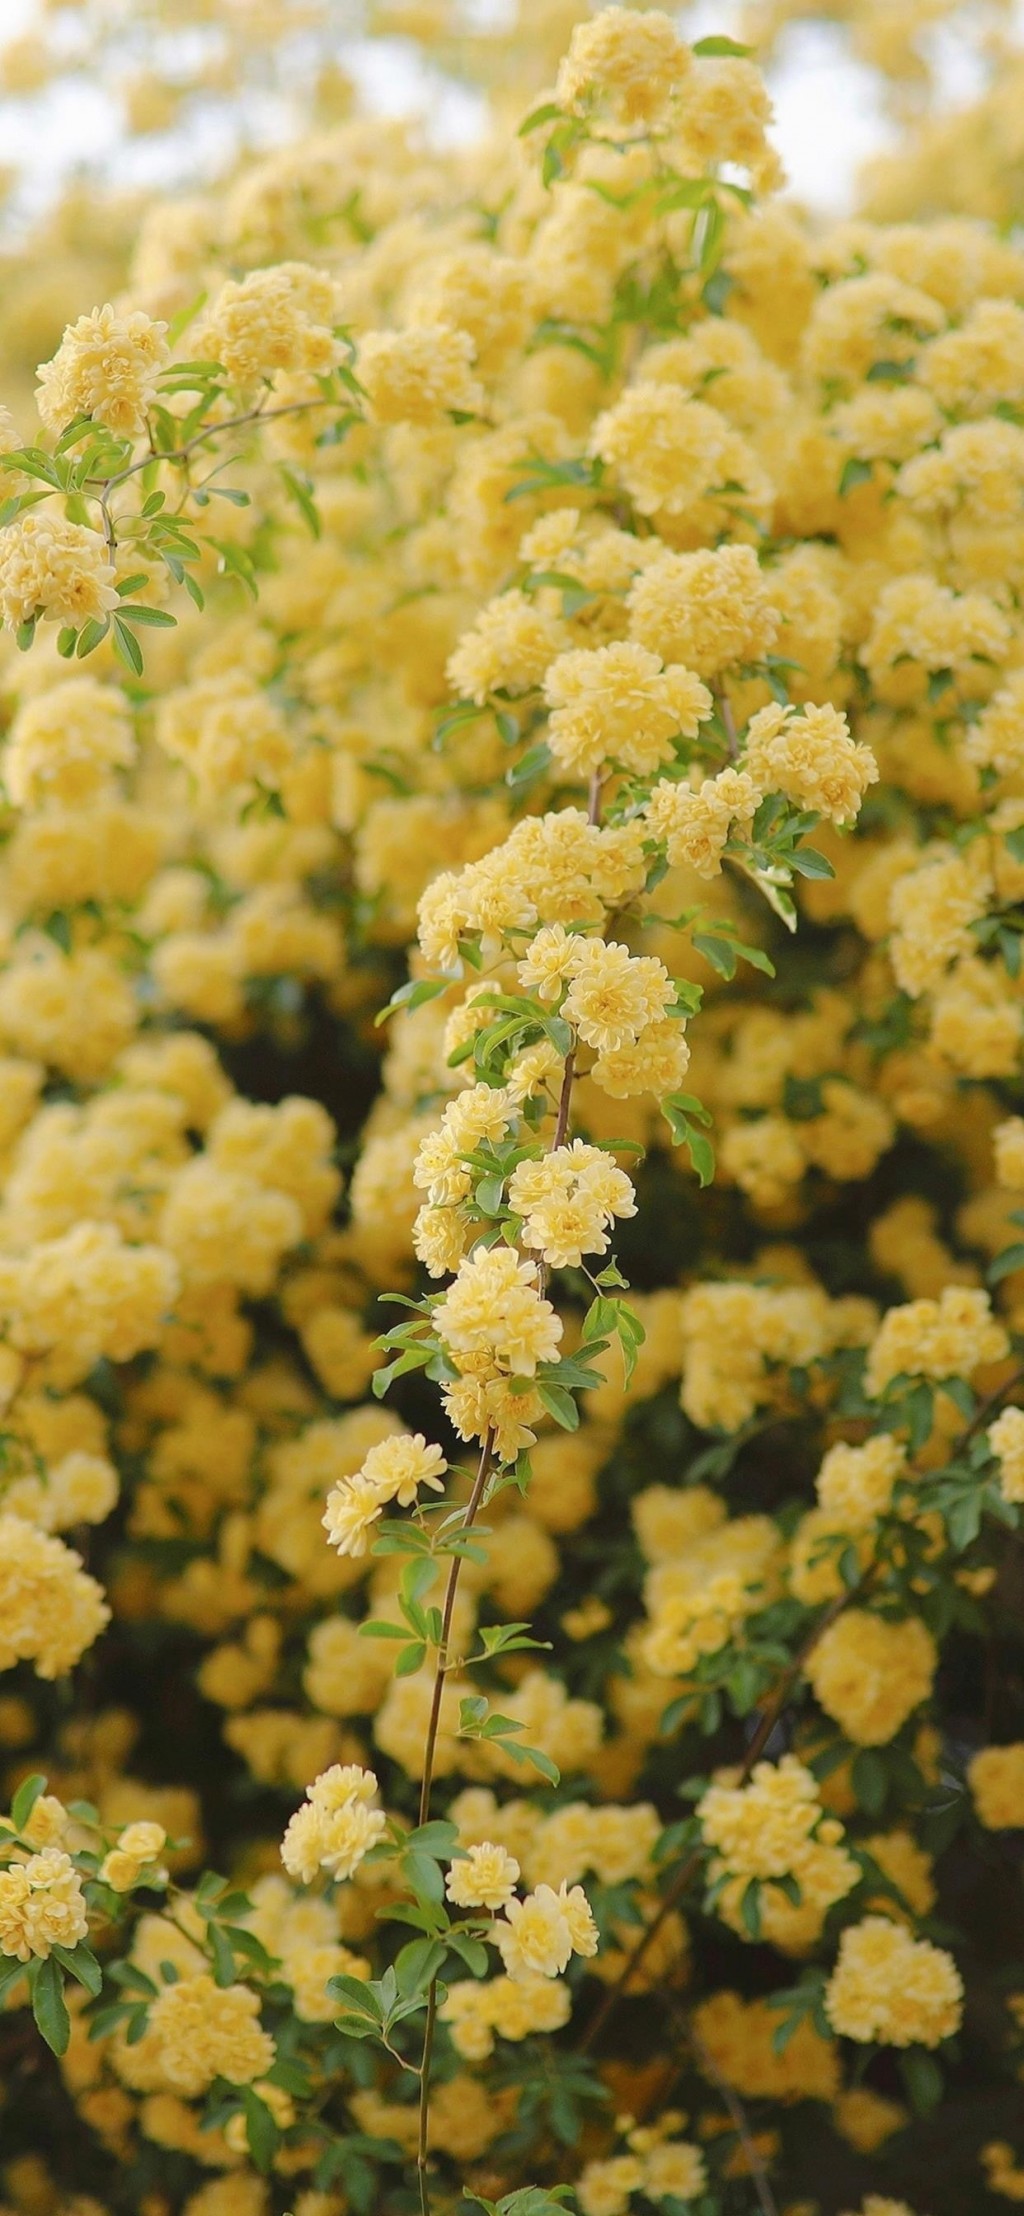 木香花唯美黄色花卉手机壁纸